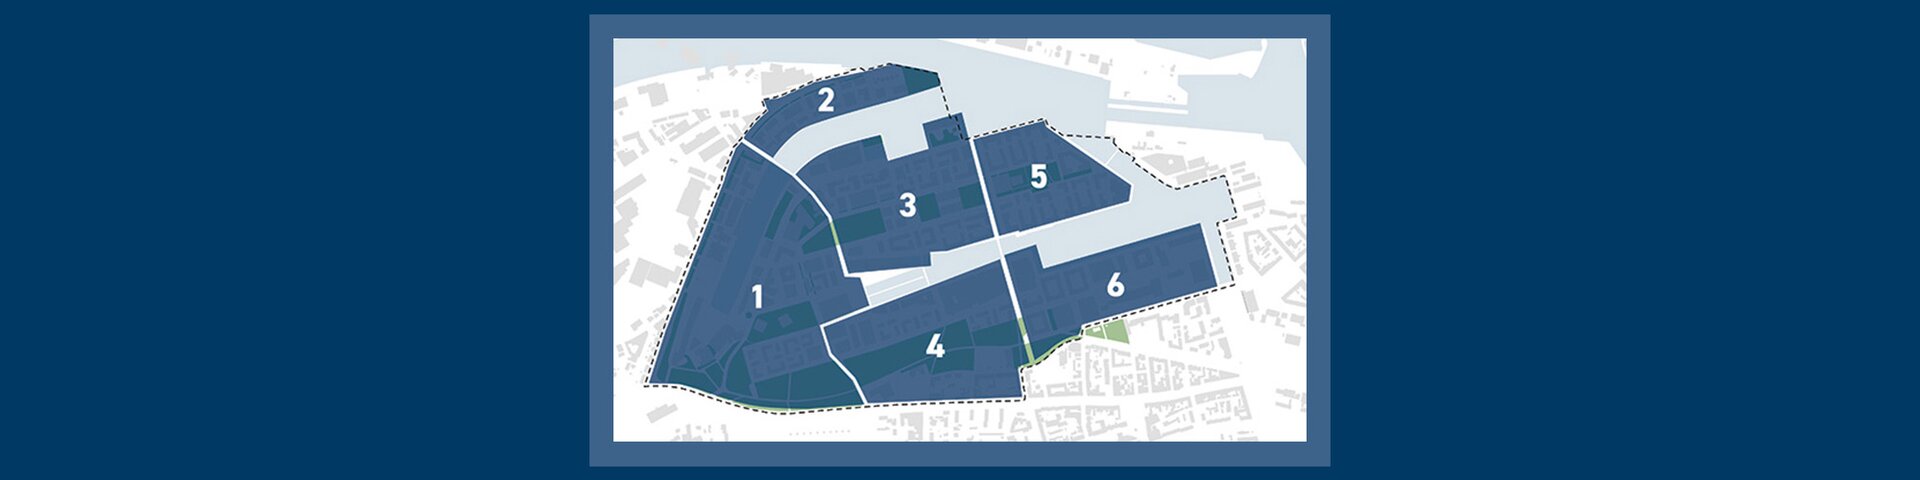 Karte: neue Viertel | © Pressestelle, Magistrat der Stadt Bremerhaven